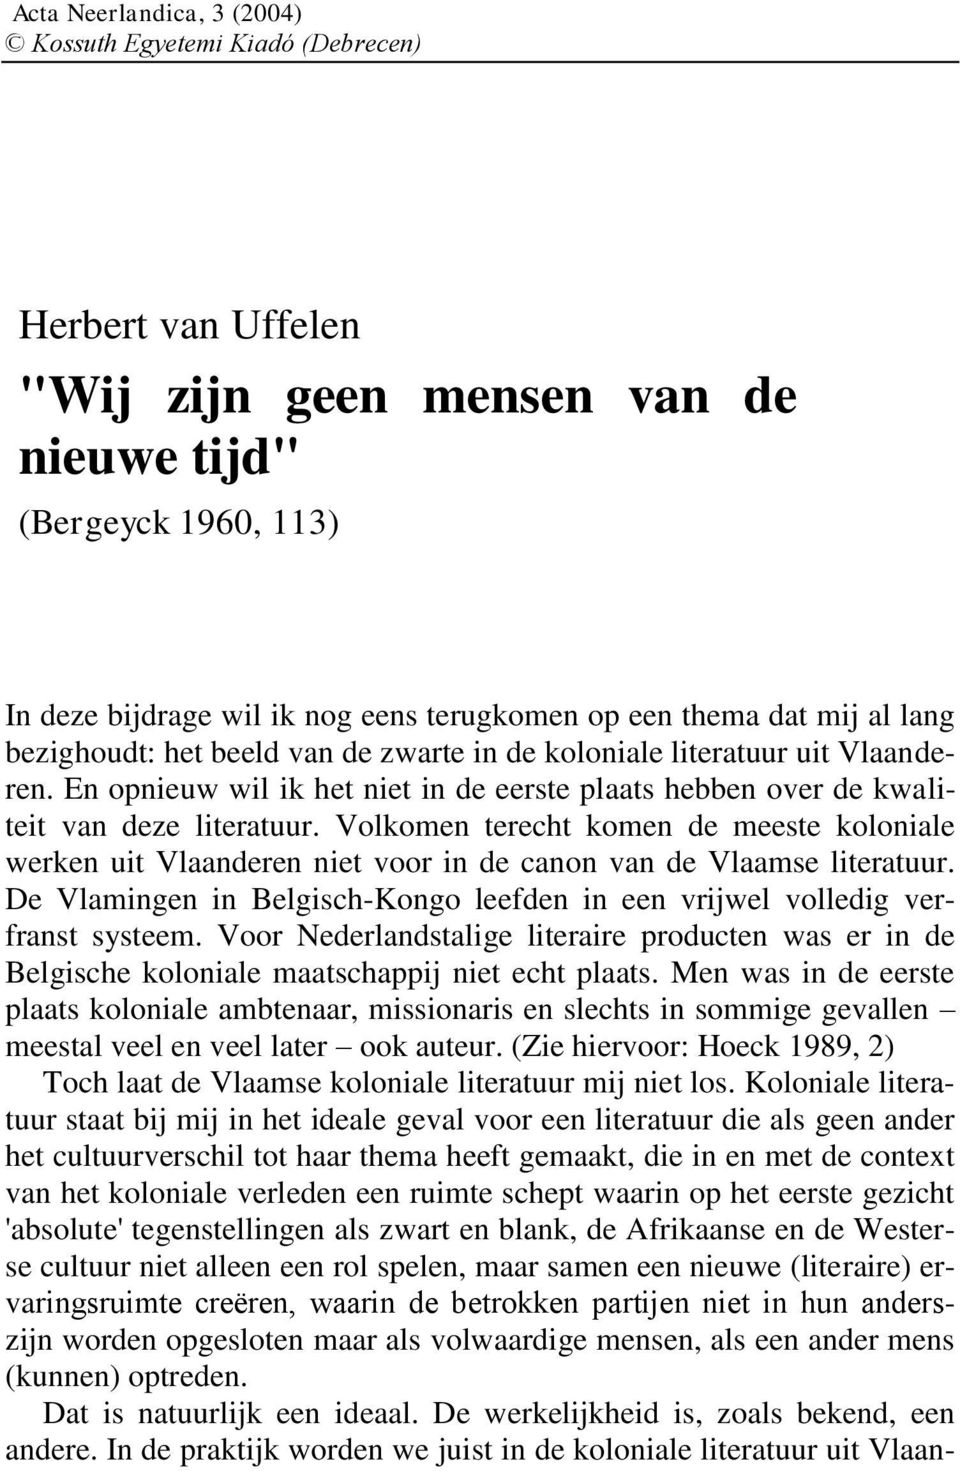 Volkomen terecht komen de meeste koloniale werken uit Vlaanderen niet voor in de canon van de Vlaamse literatuur. De Vlamingen in Belgisch-Kongo leefden in een vrijwel volledig verfranst systeem.